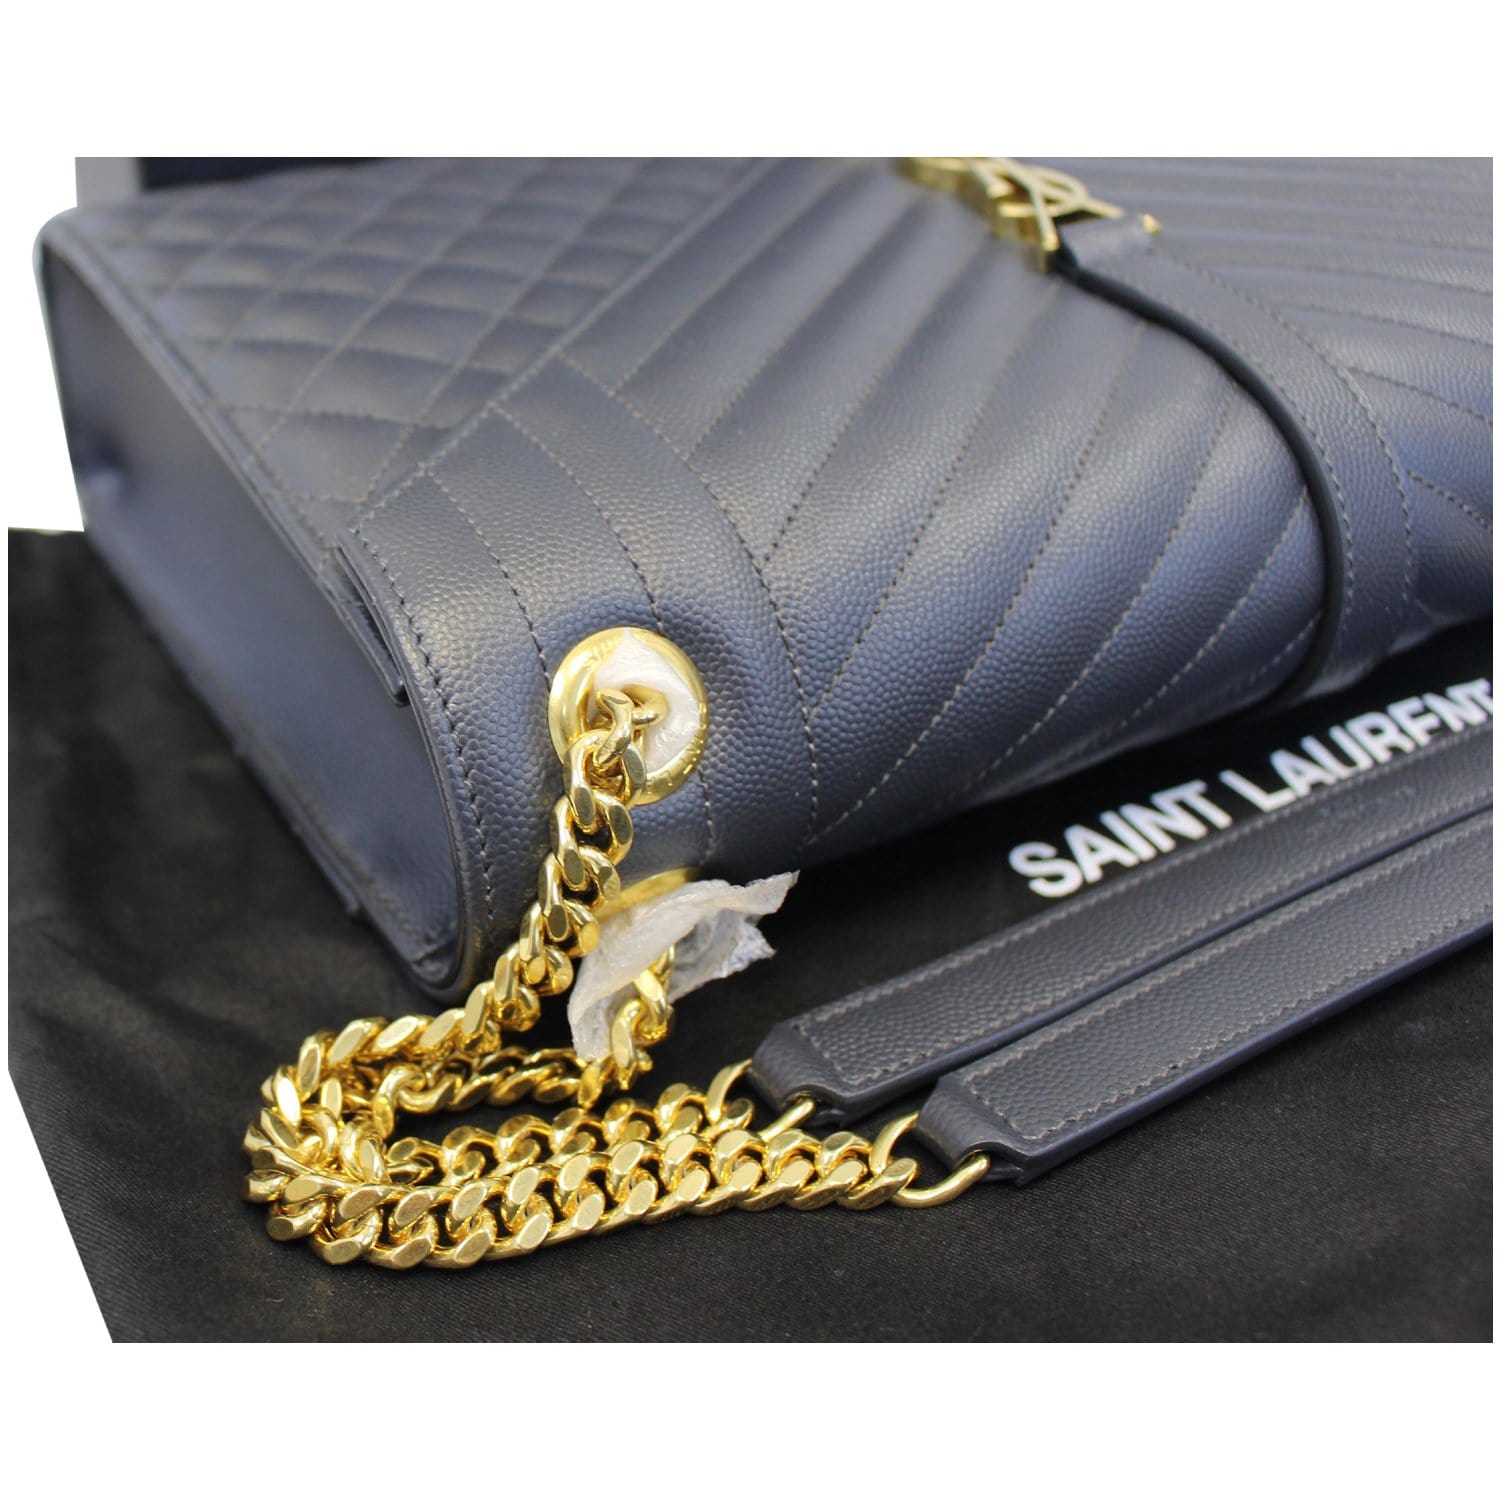 Neutral Envelope matelassé-leather shoulder bag, Saint Laurent